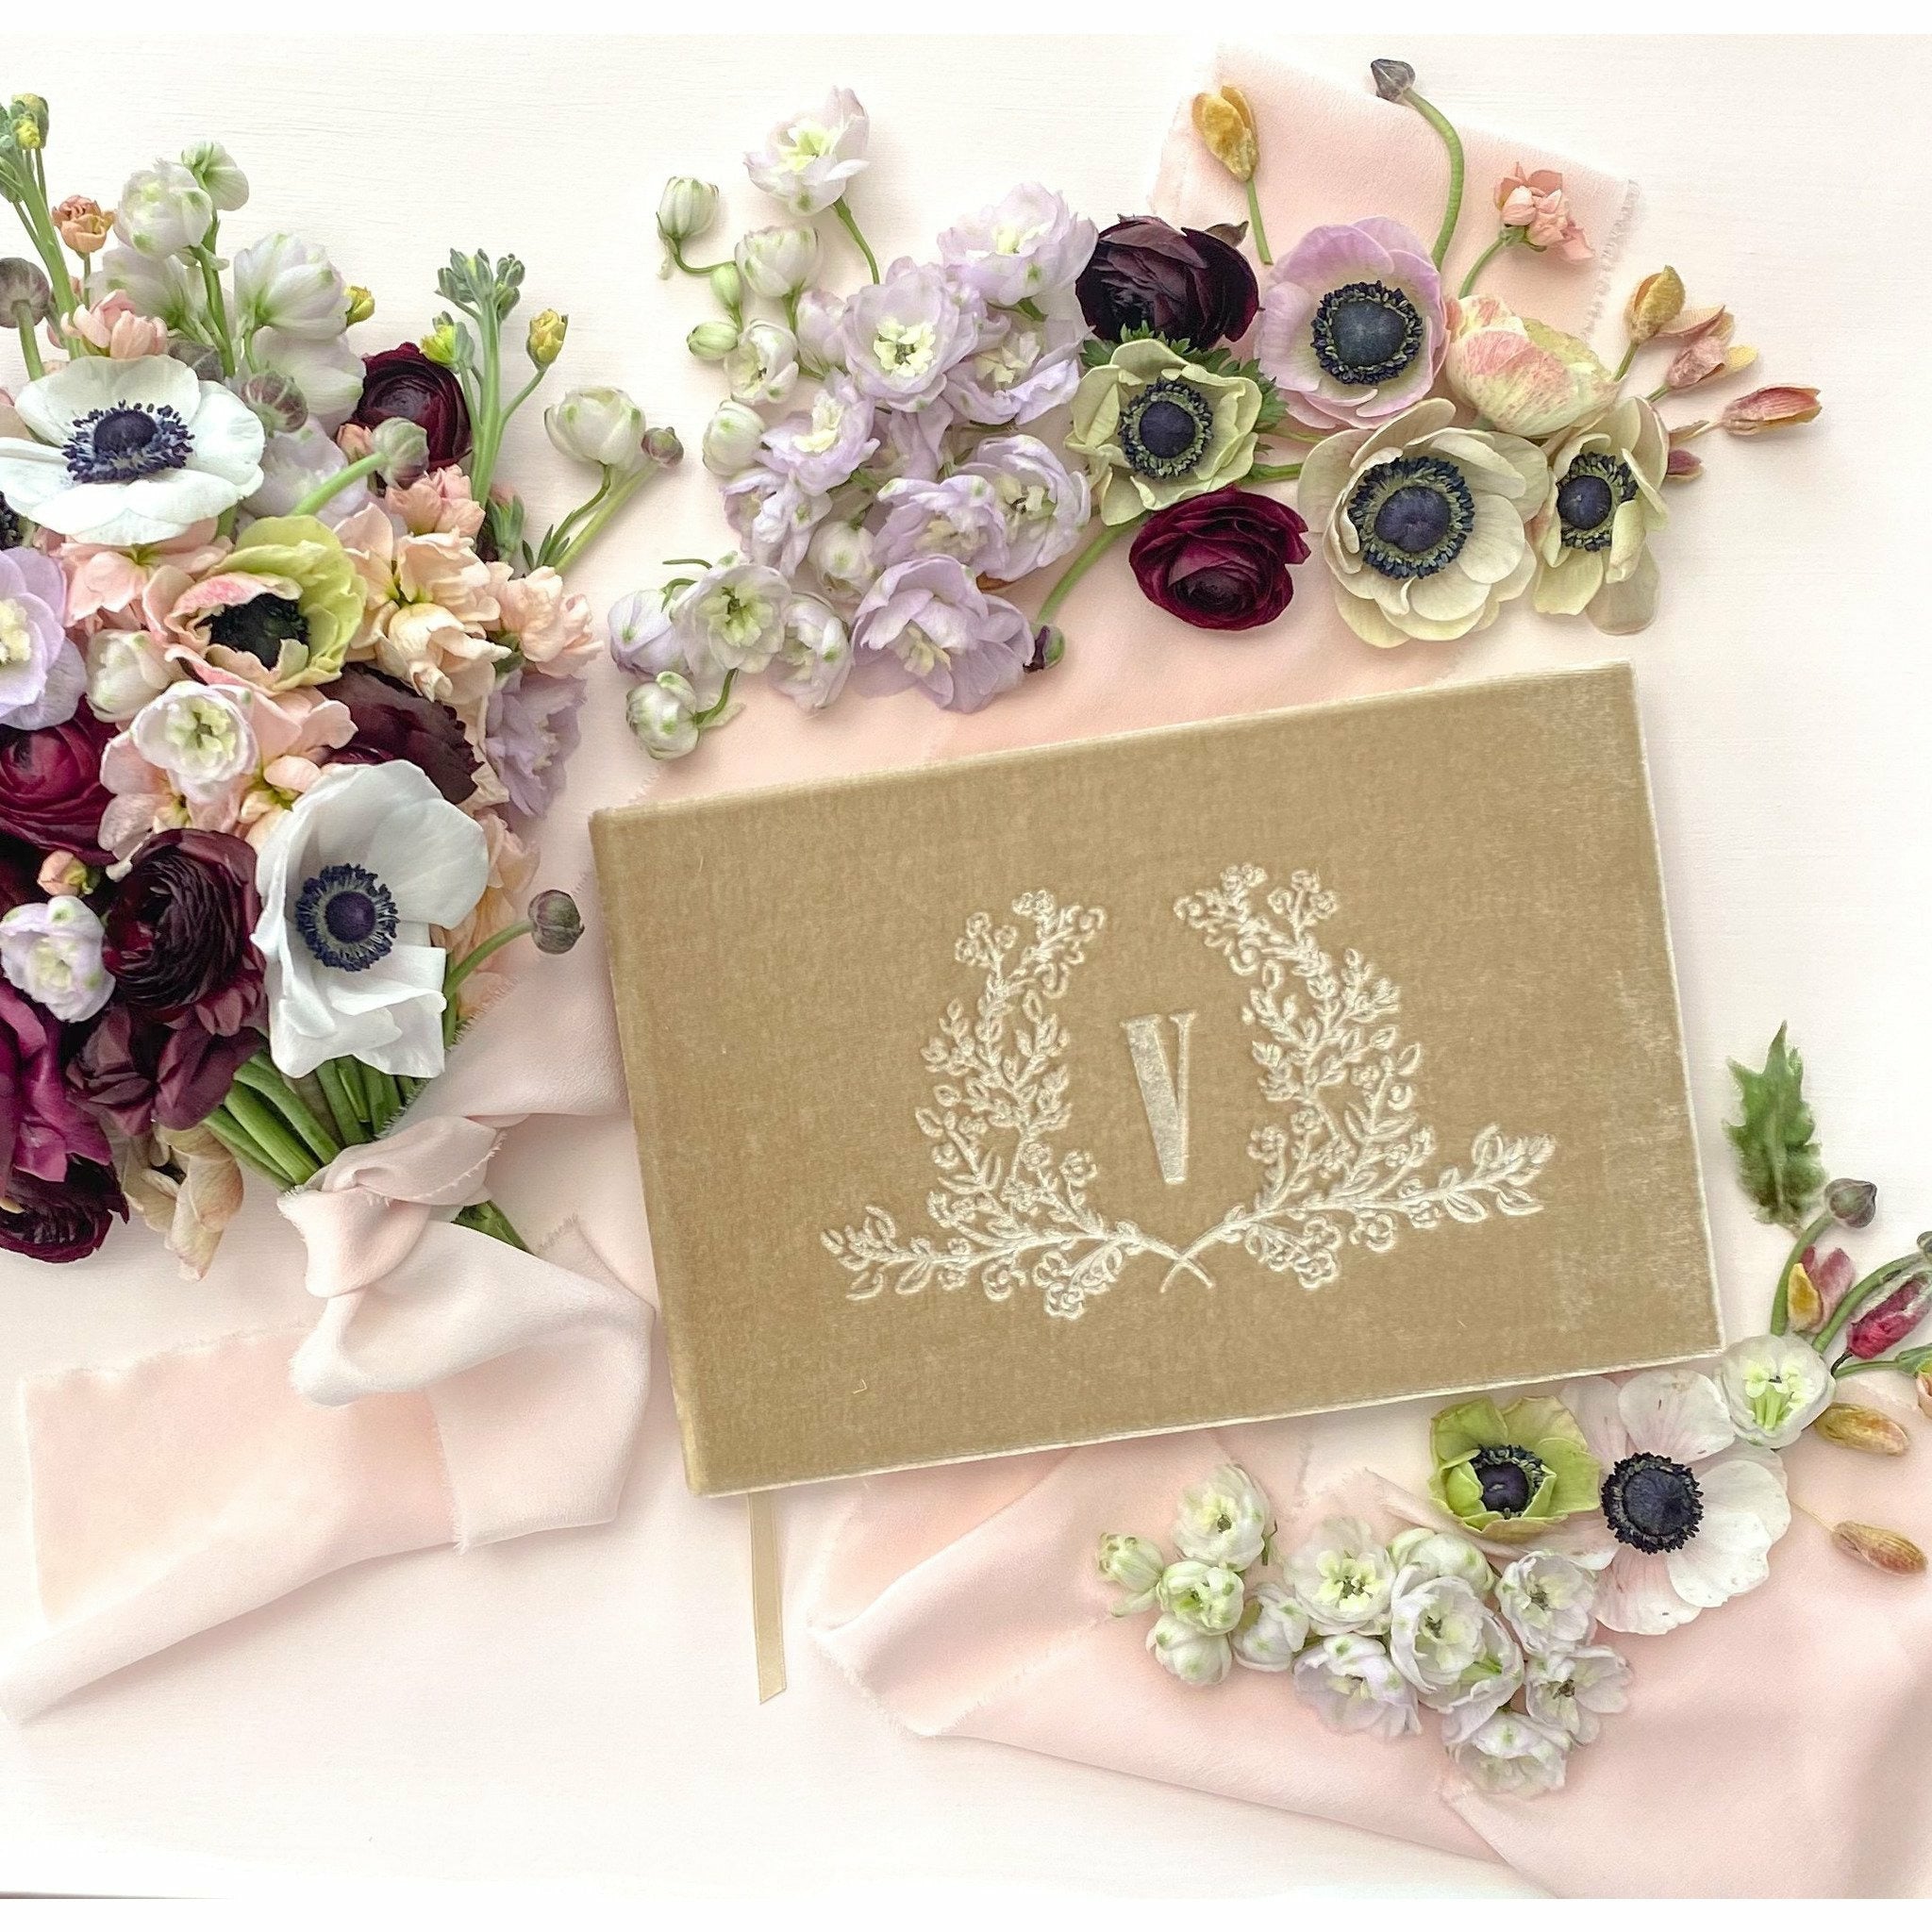 Monogram Wedding Wreath Silk Velvet Guest Book - The First Snow